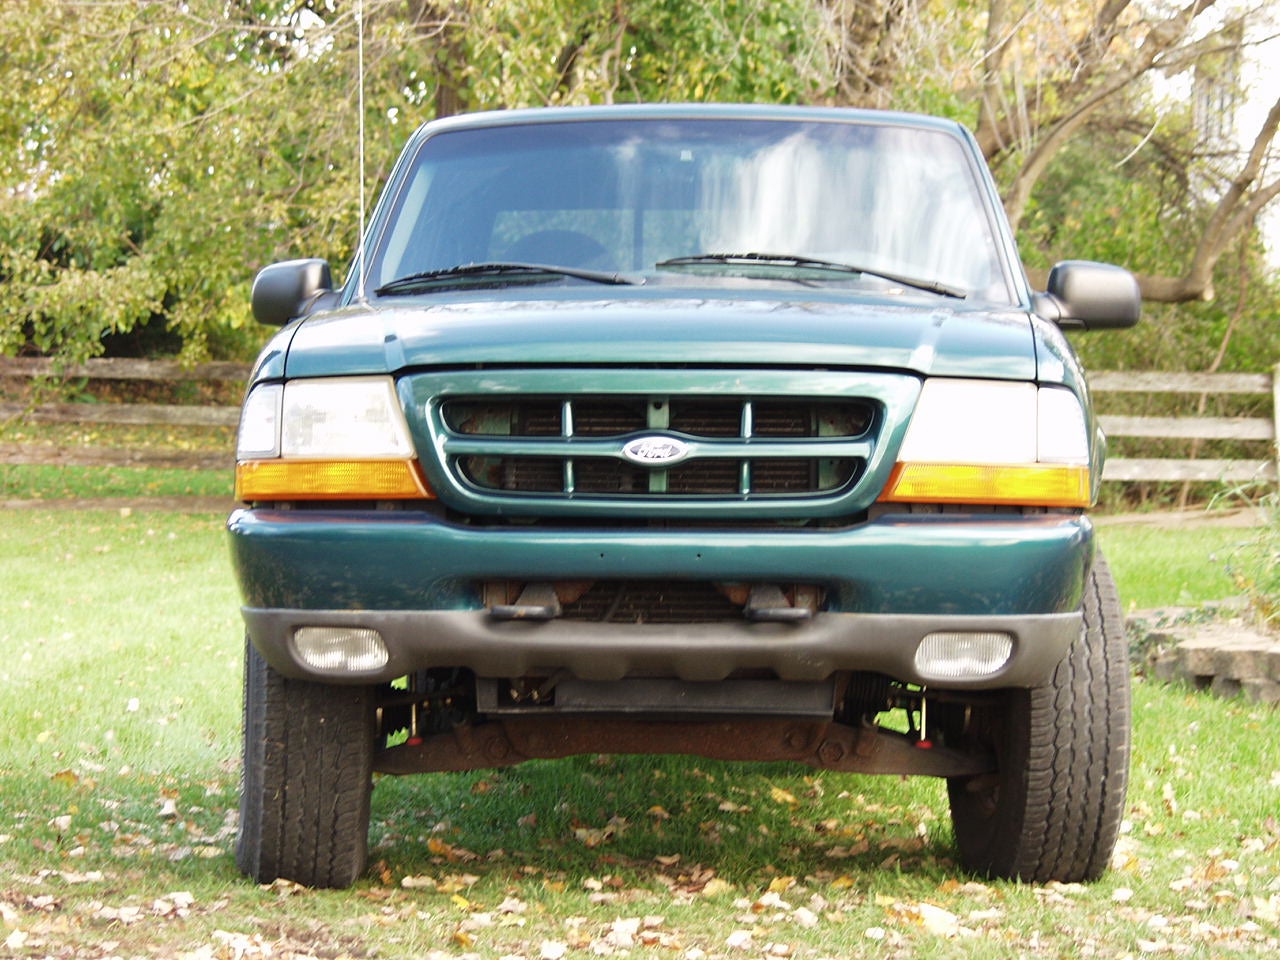 Right Side For 1998-2000 Ford Ranger Pickup Fog Lights PAIR Left Side